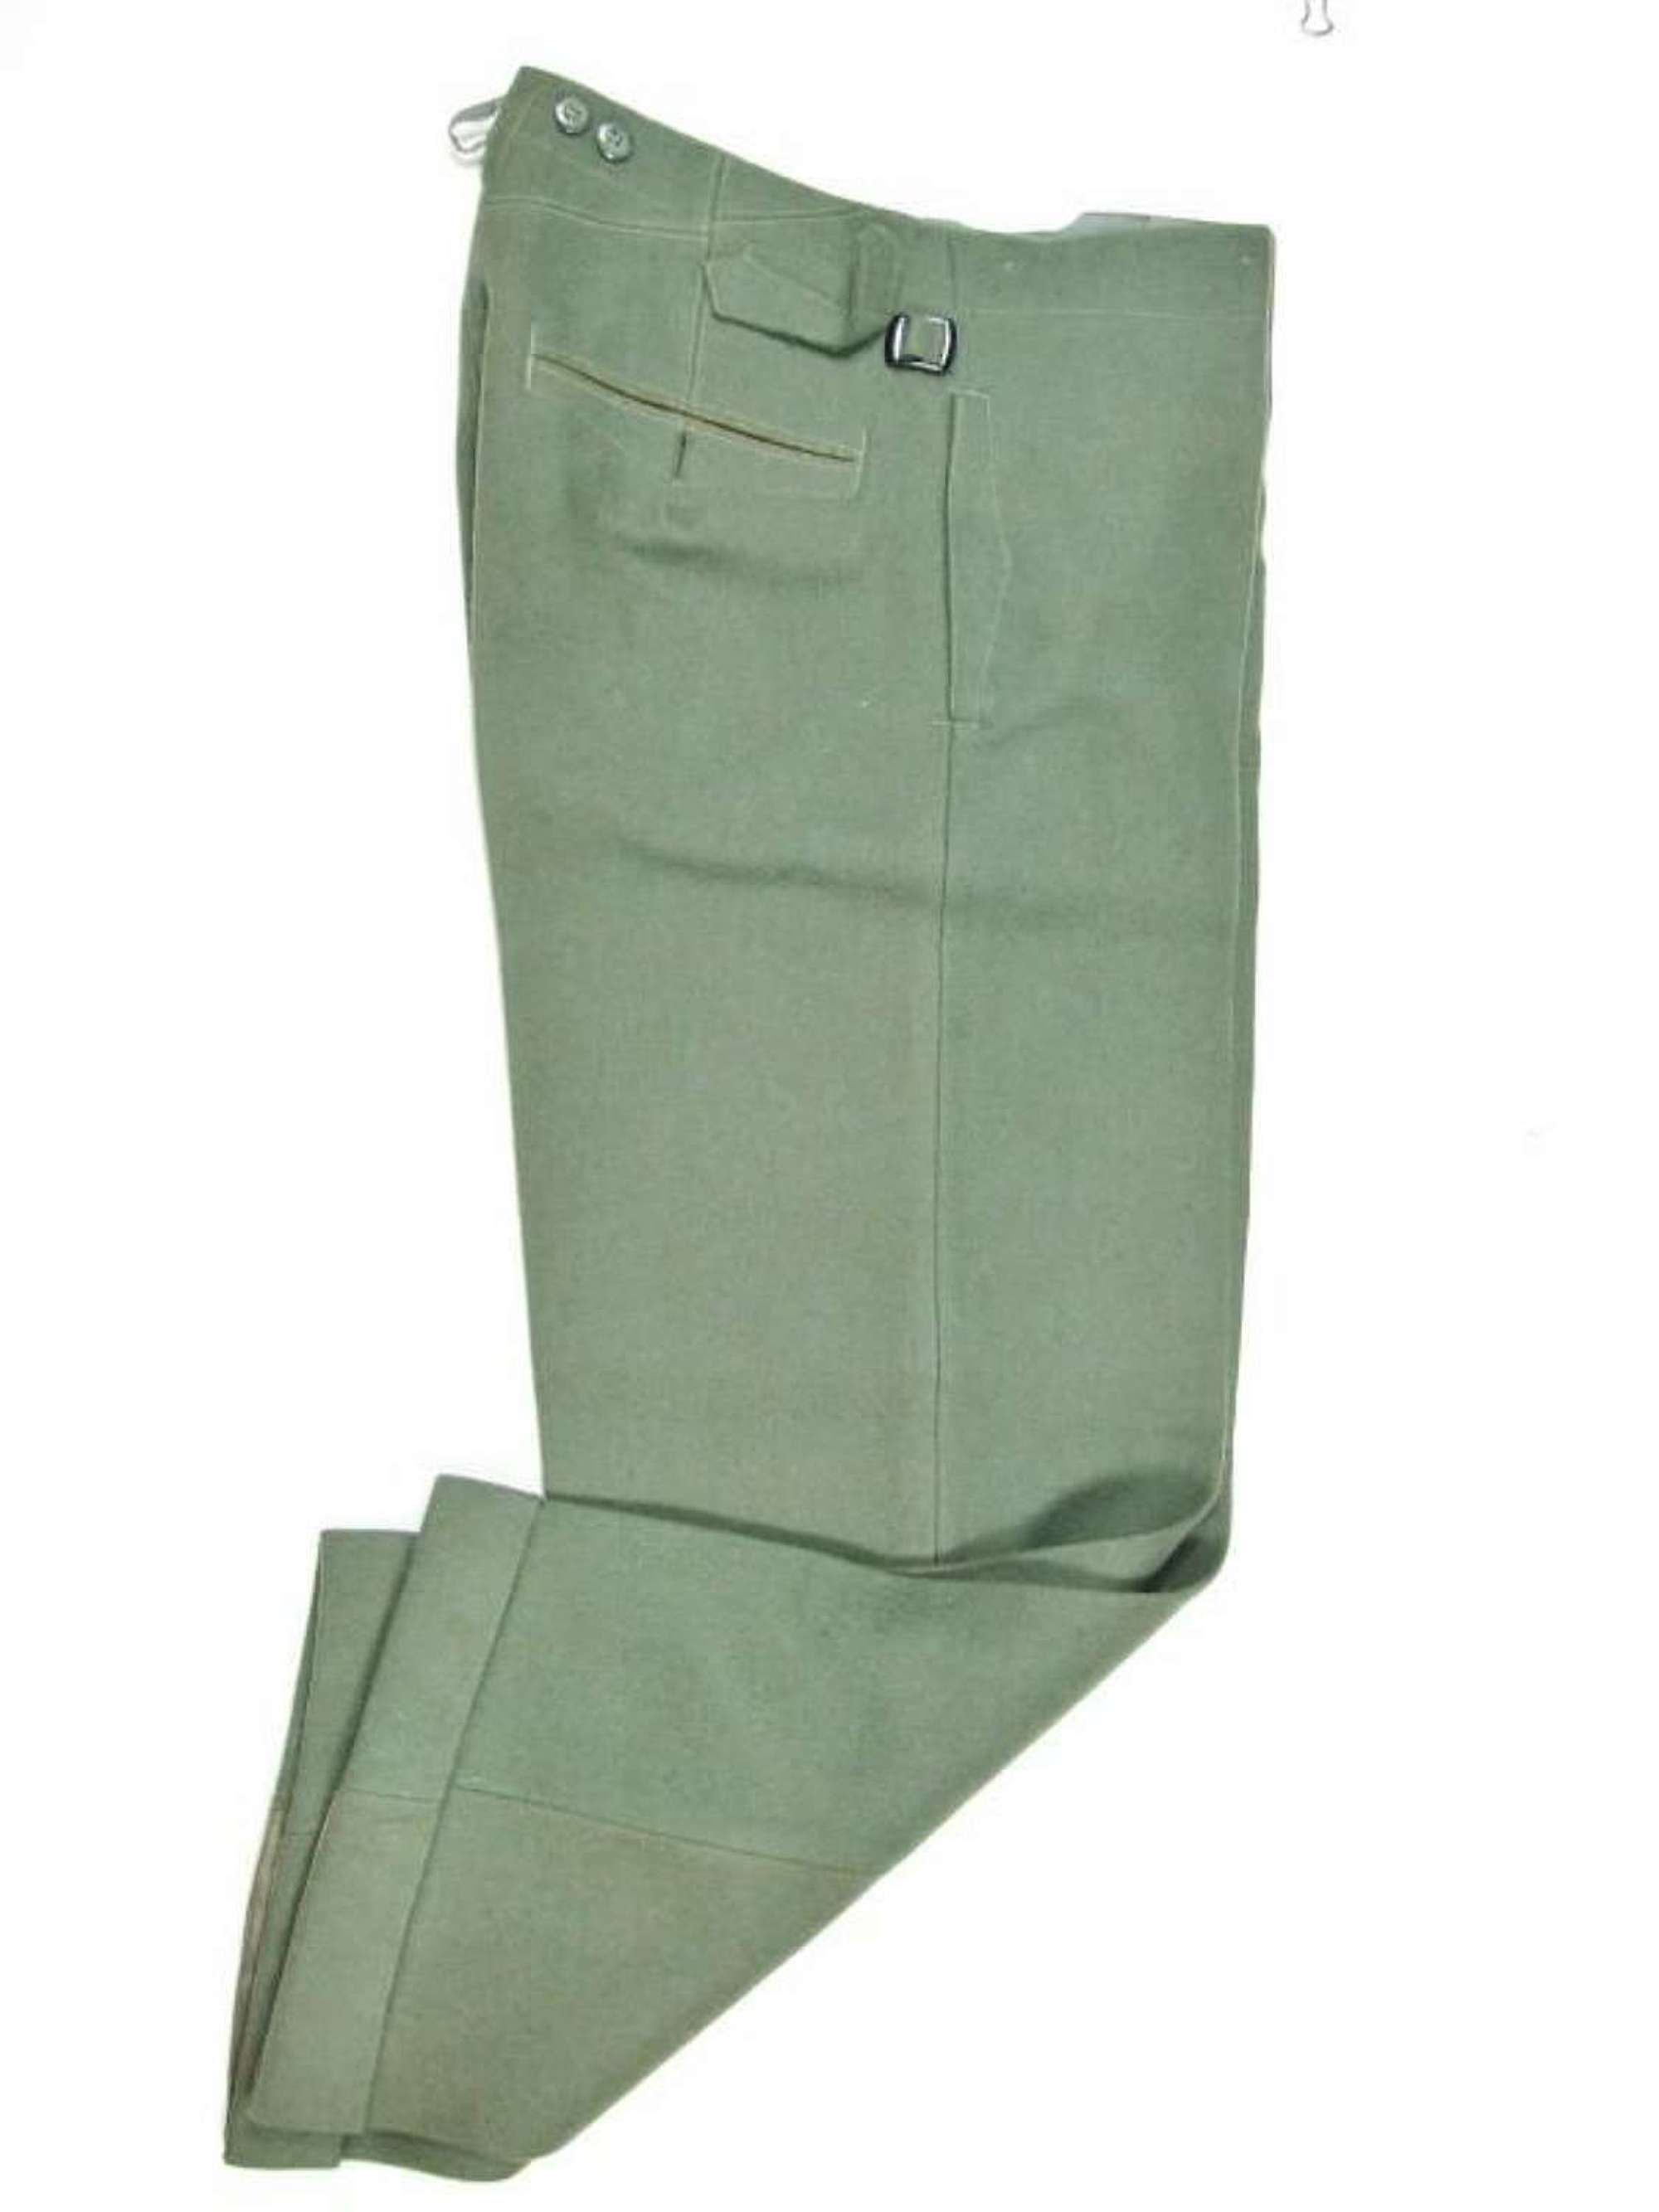 German Army Officer or NCO  Kliederkasse Trousers